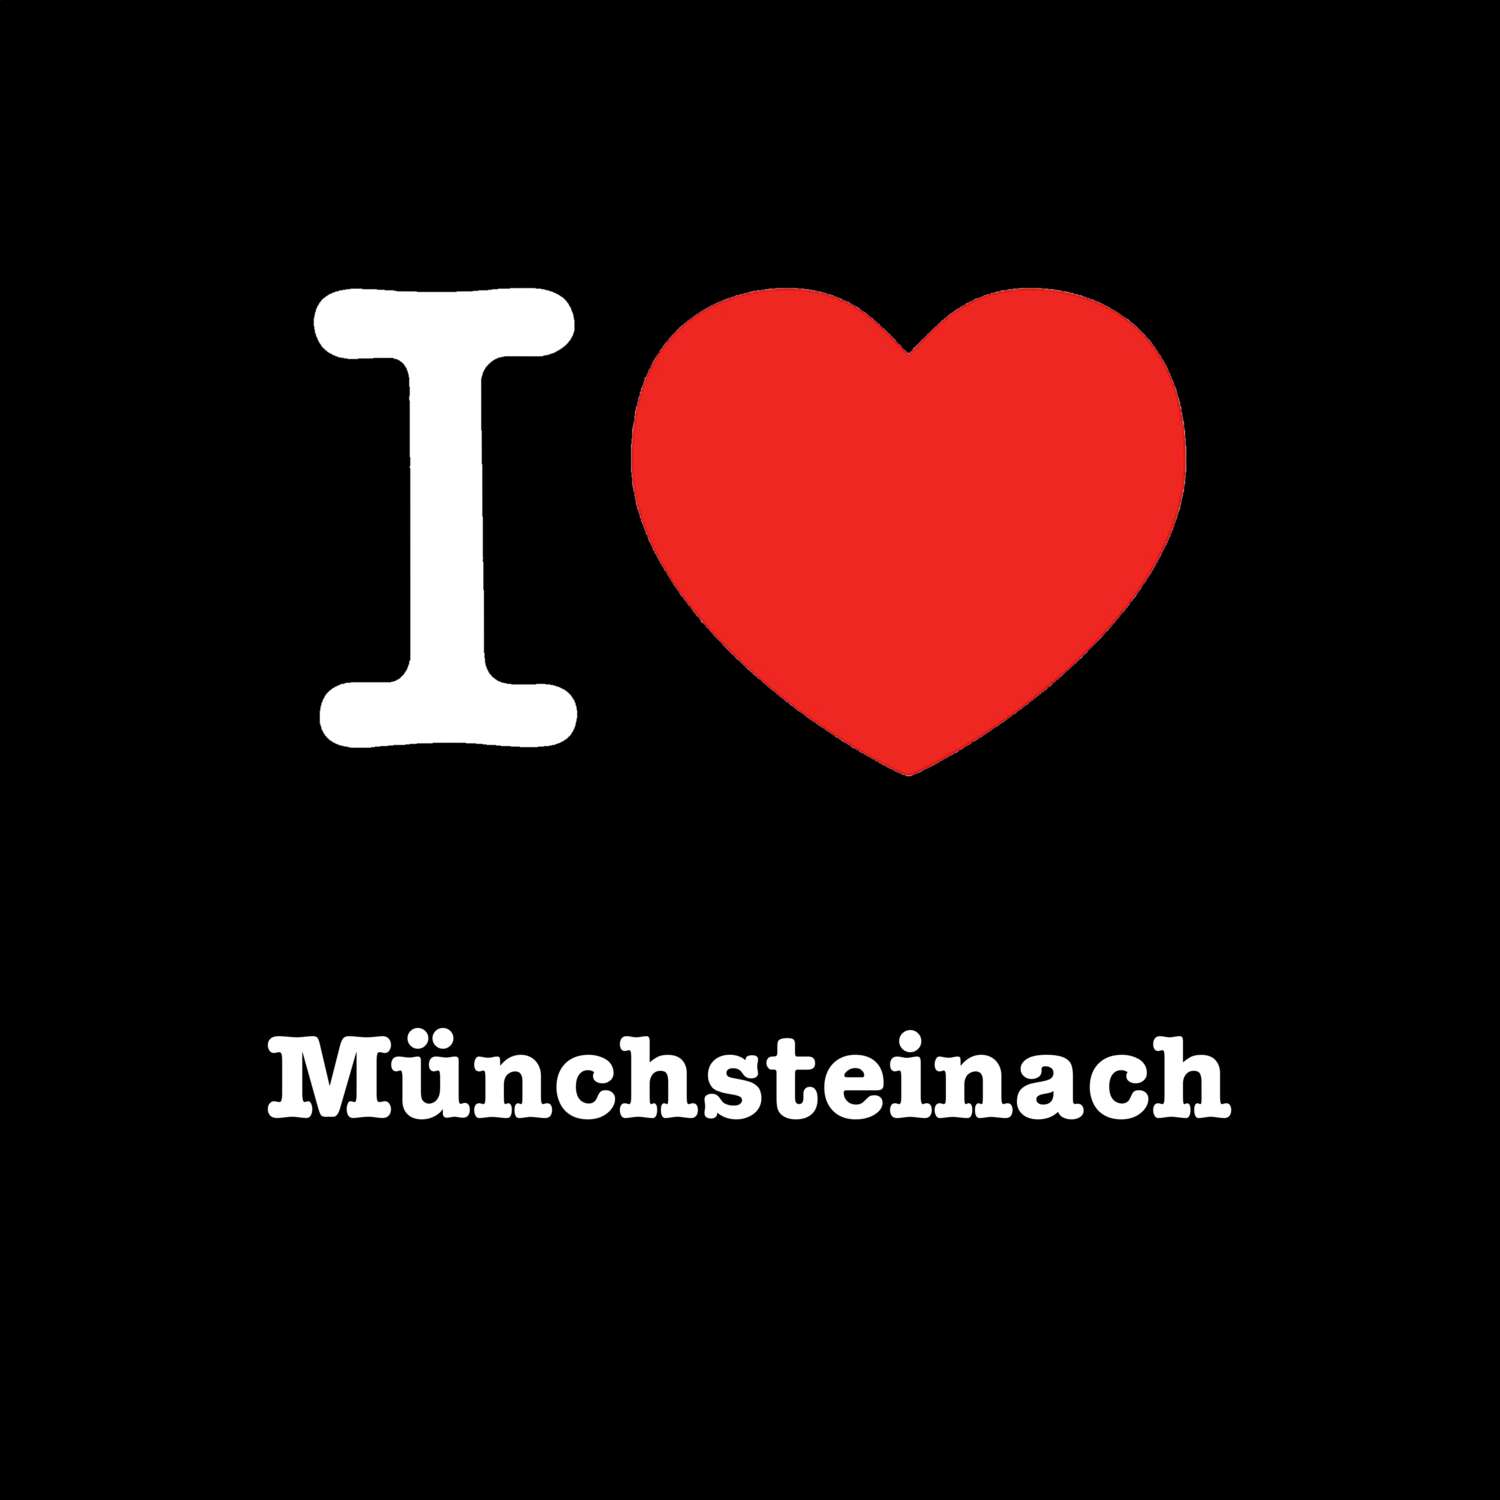 Münchsteinach T-Shirt »I love«